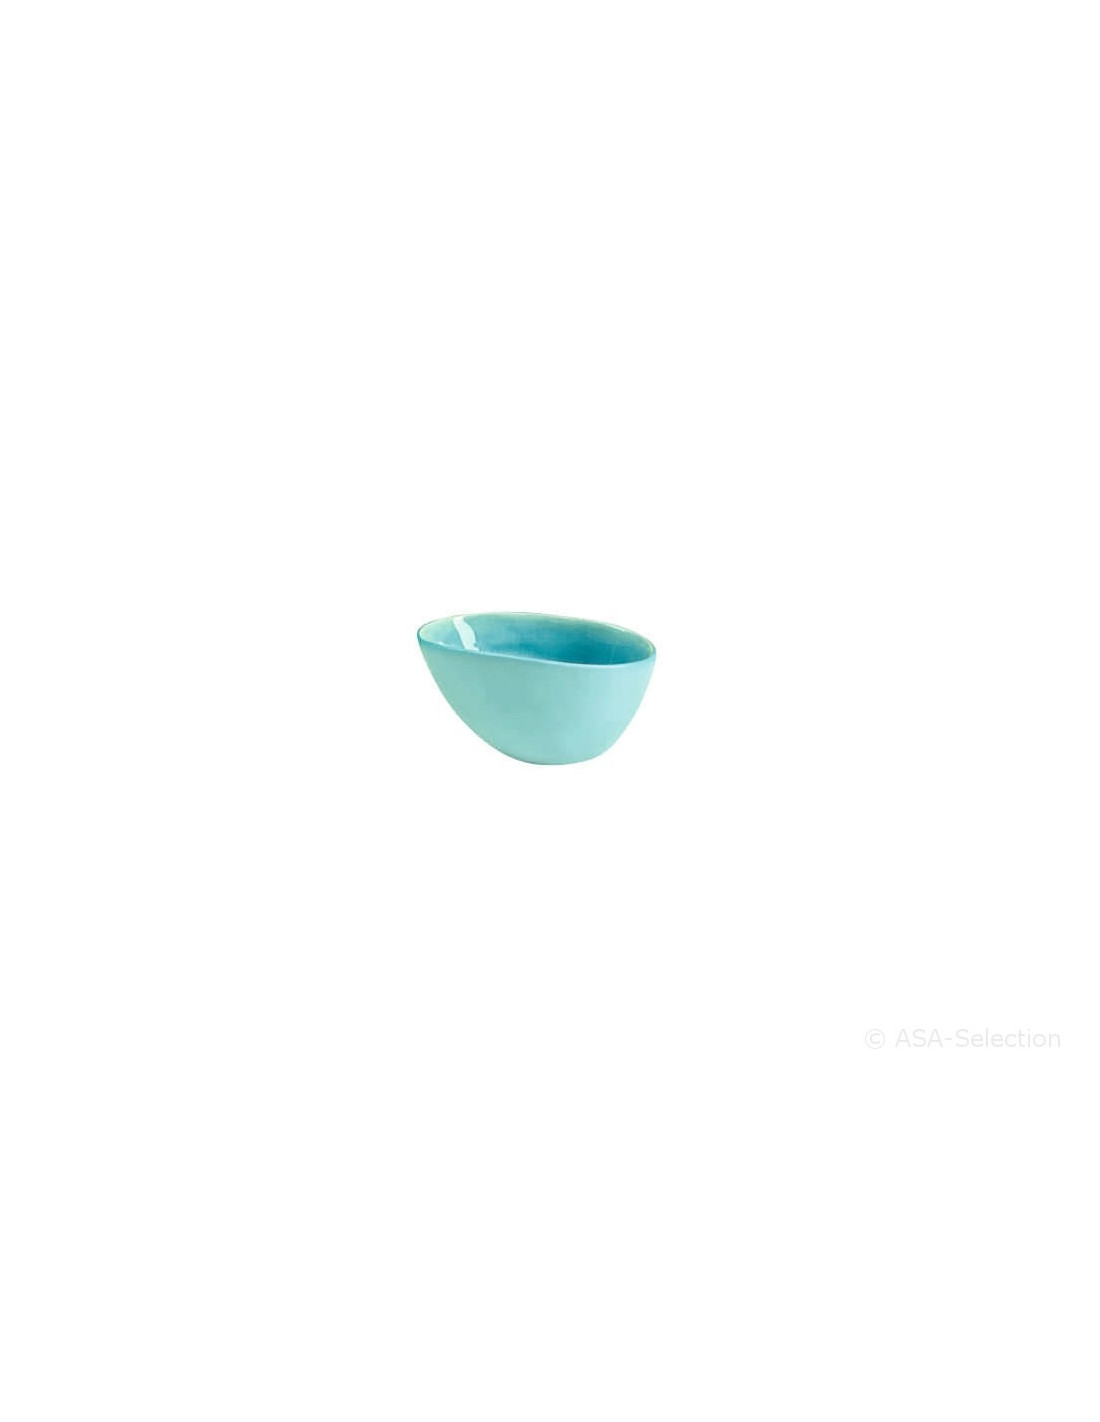 petit bol snacking 10,5cm*7,5cm bleu turquoise A LA PLAGE